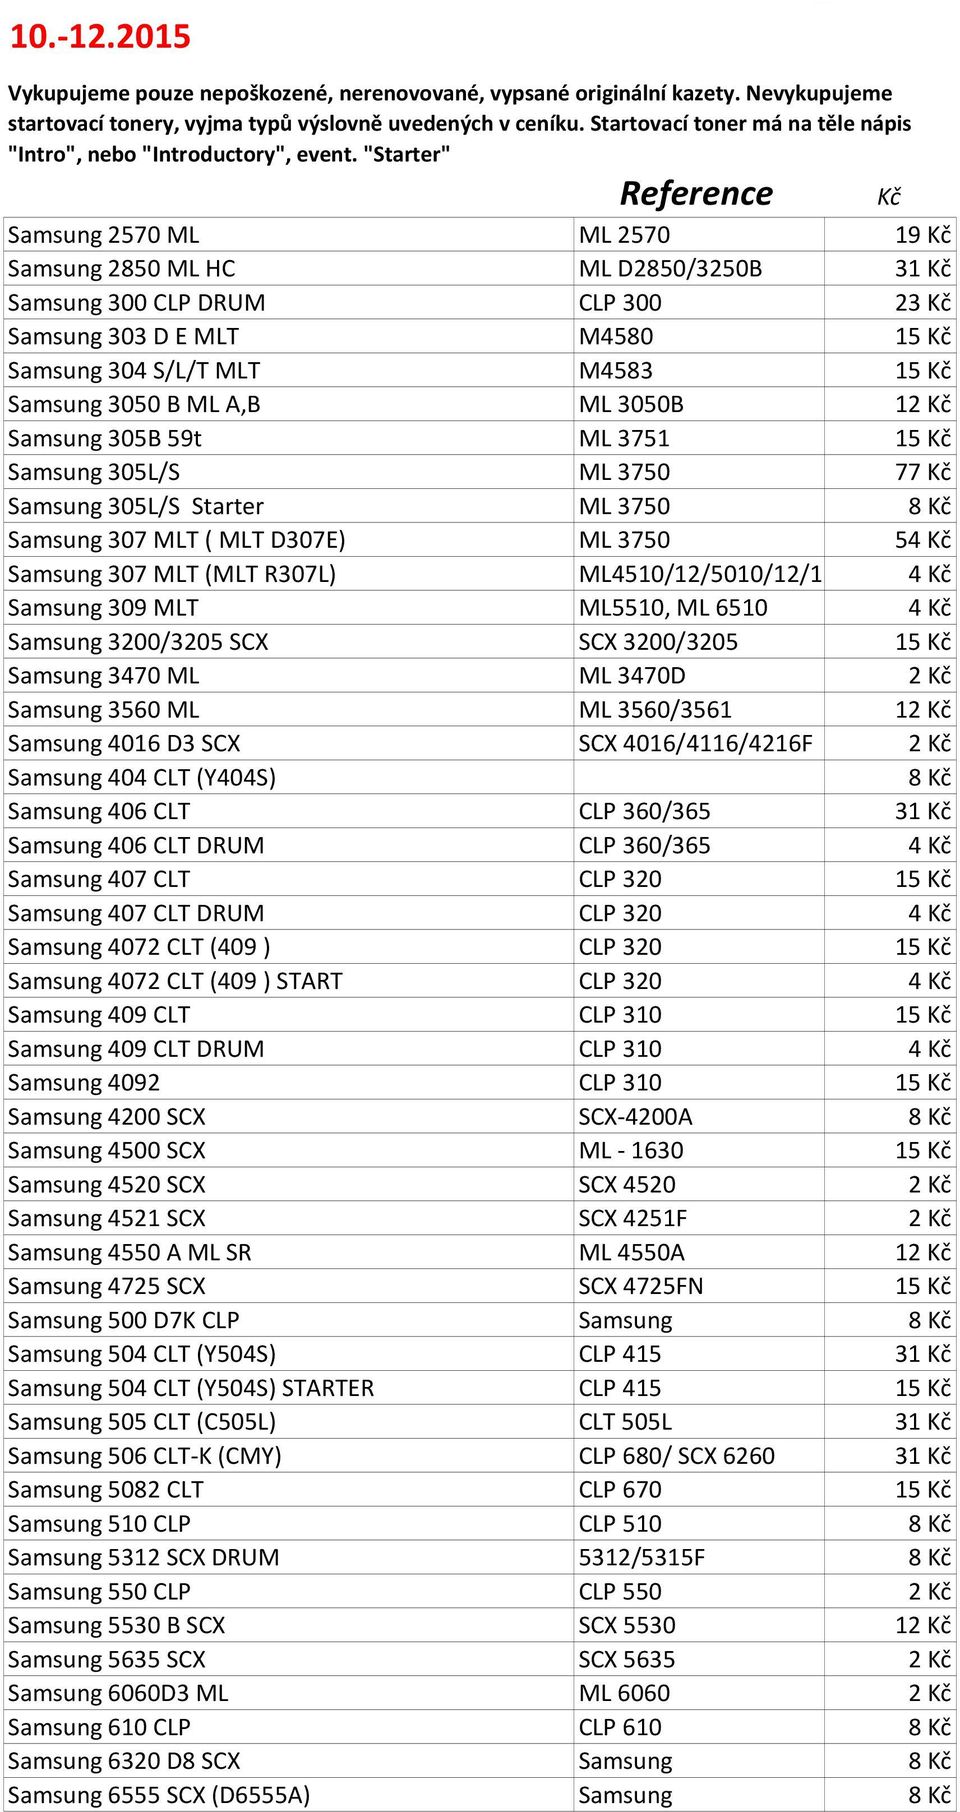 Samsung 3200/3205 SCX SCX 3200/3205 15 Samsung 3470 ML ML 3470D 2 Samsung 3560 ML ML 3560/3561 12 Samsung 4016 D3 SCX SCX 4016/4116/4216F 2 Samsung 404 CLT (Y404S) Samsung 406 CLT CLP 360/365 31